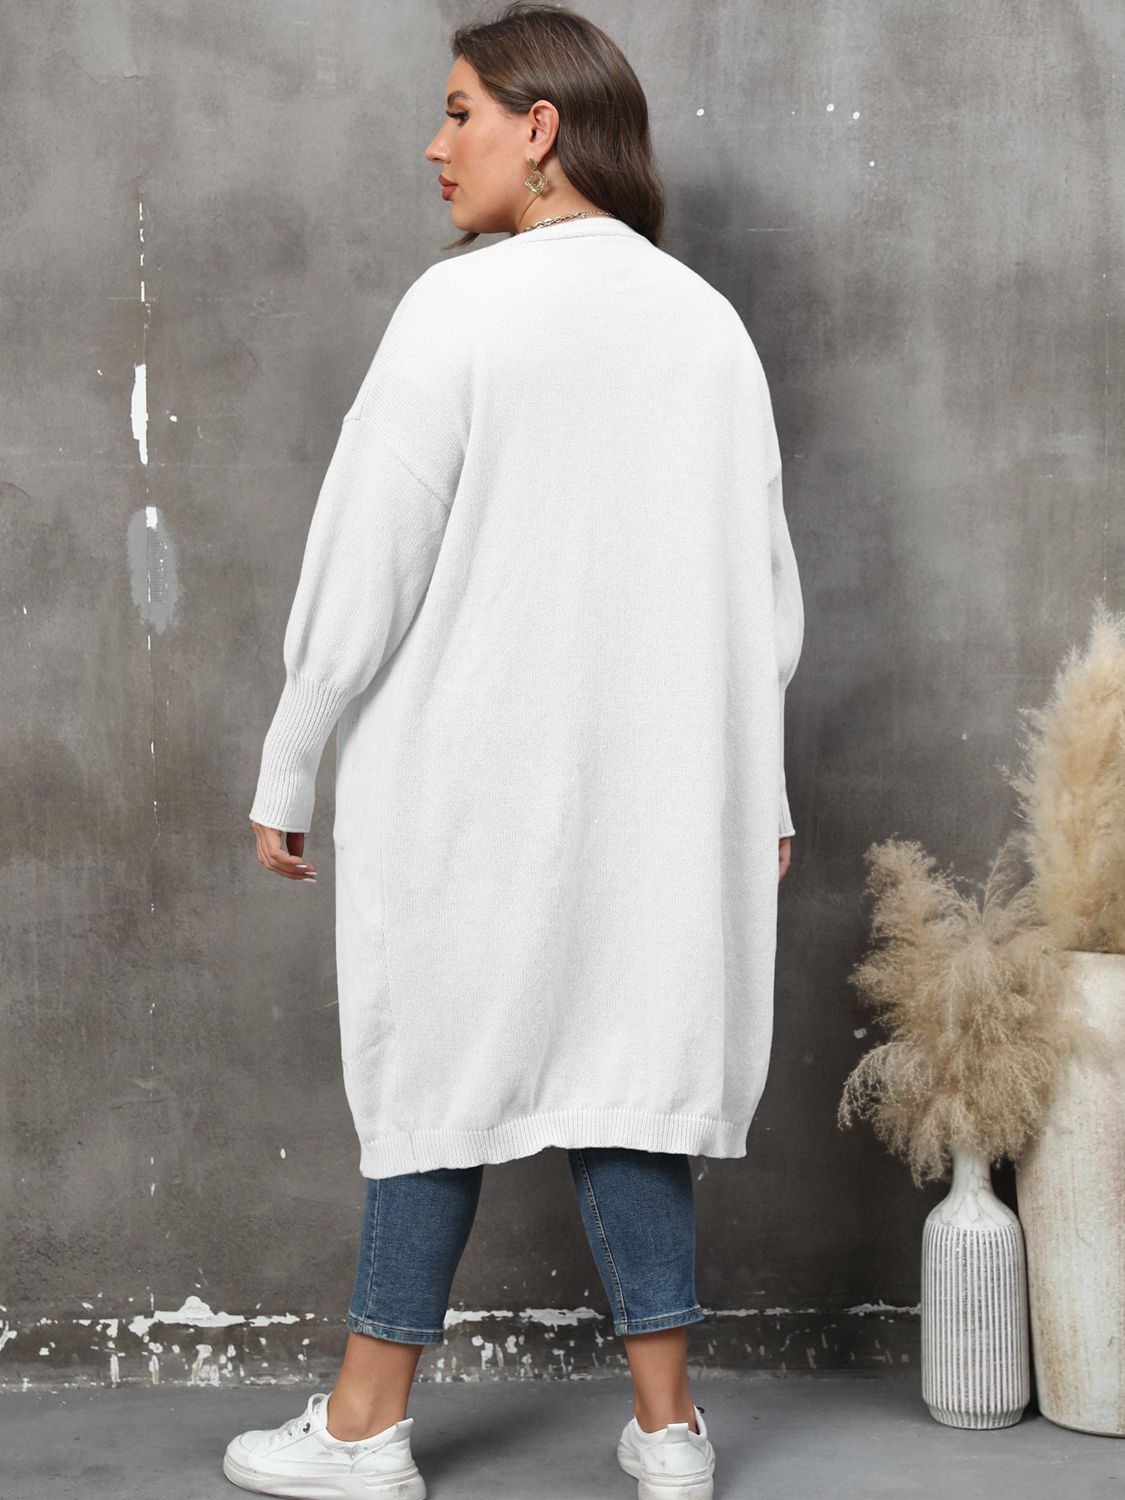 Slate Gray Plus Size Long Sleeve Pocketed Cardigan Clothing